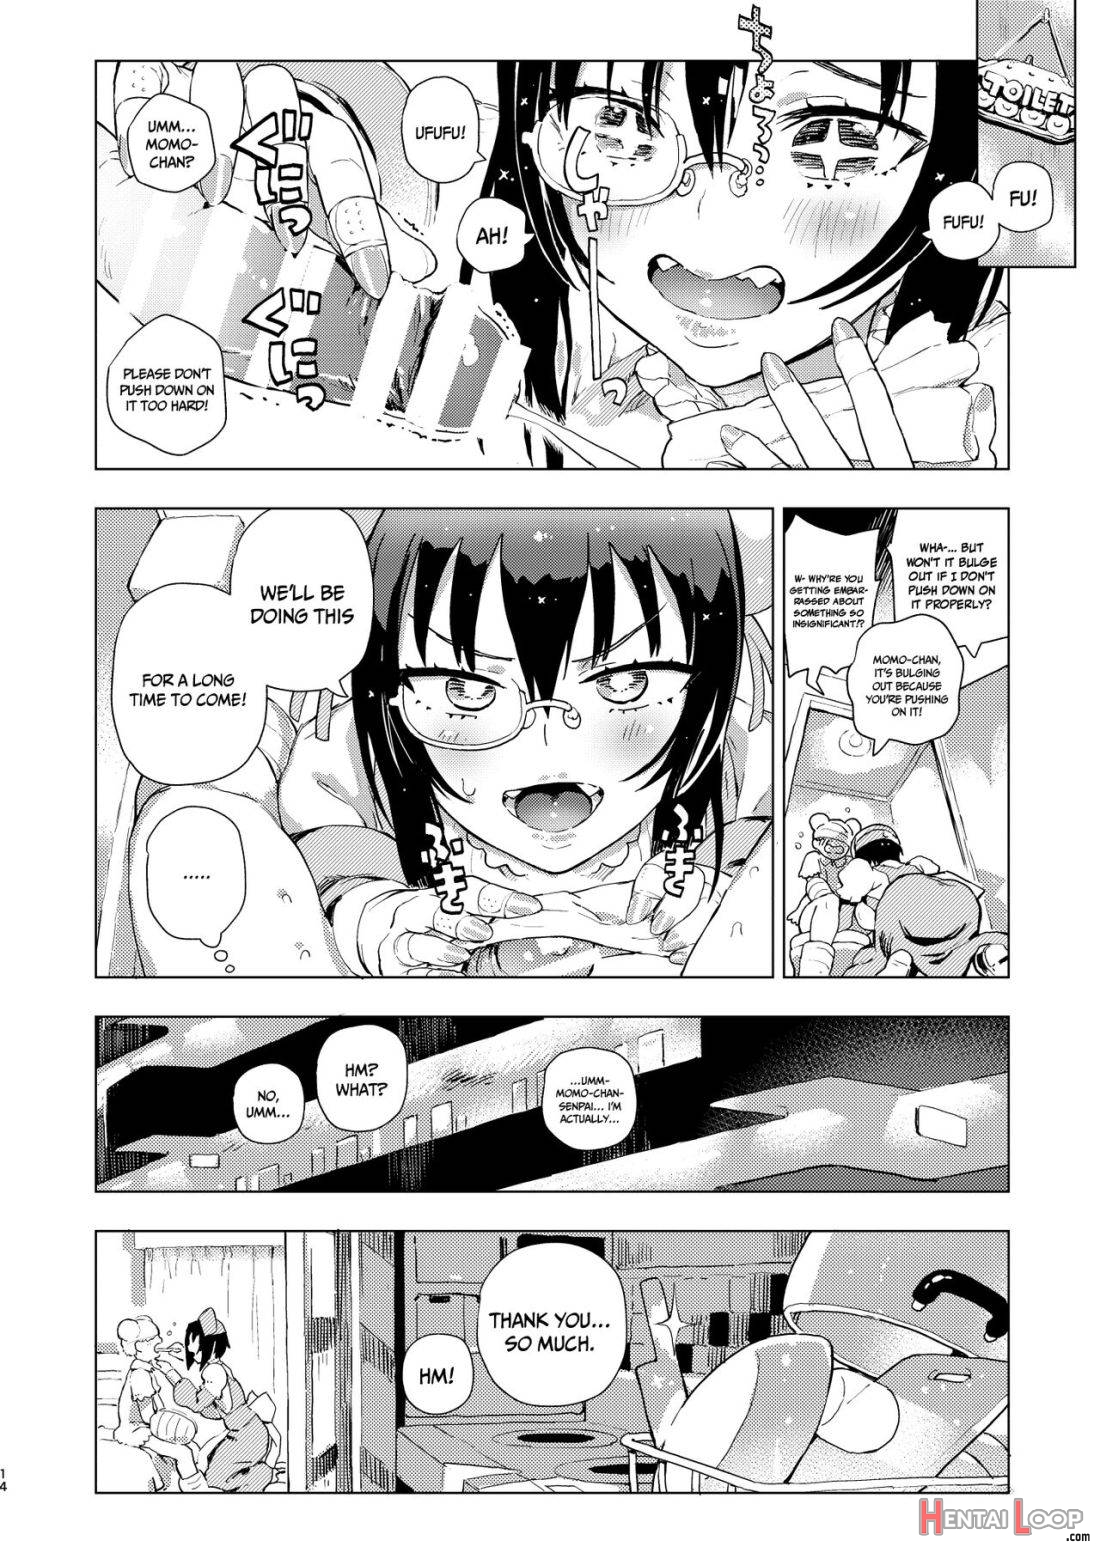 Kawashima Nurse no Dotabata Oteate Daisakusen! page 13